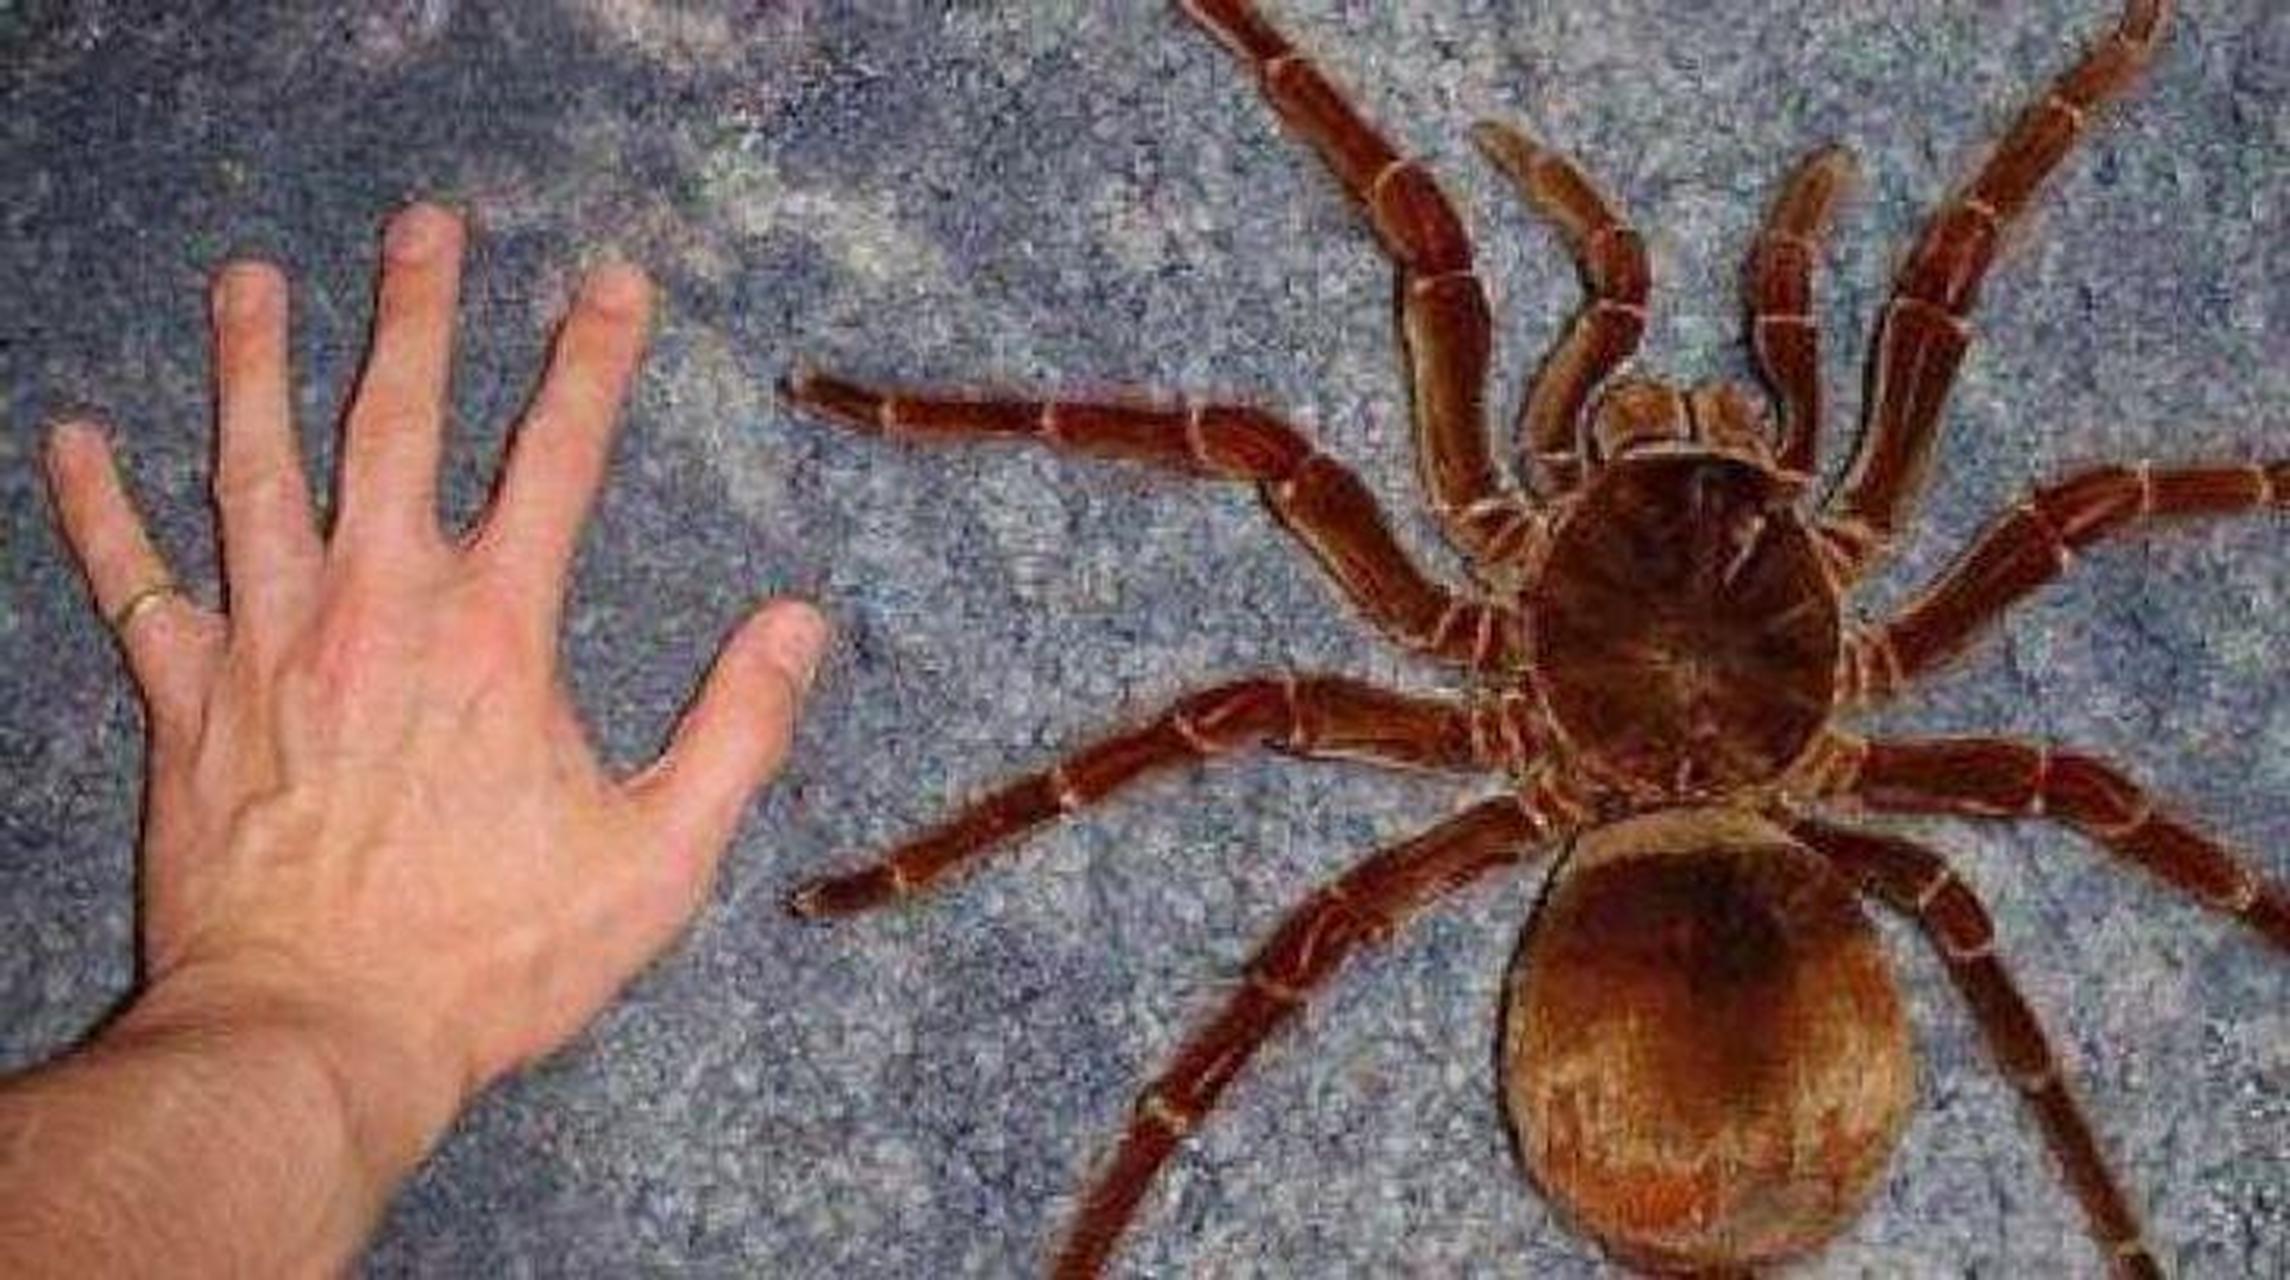 世界上最大的蜘蛛:巨人捕鸟蛛.要是在家里发现这个你会是什么反应?